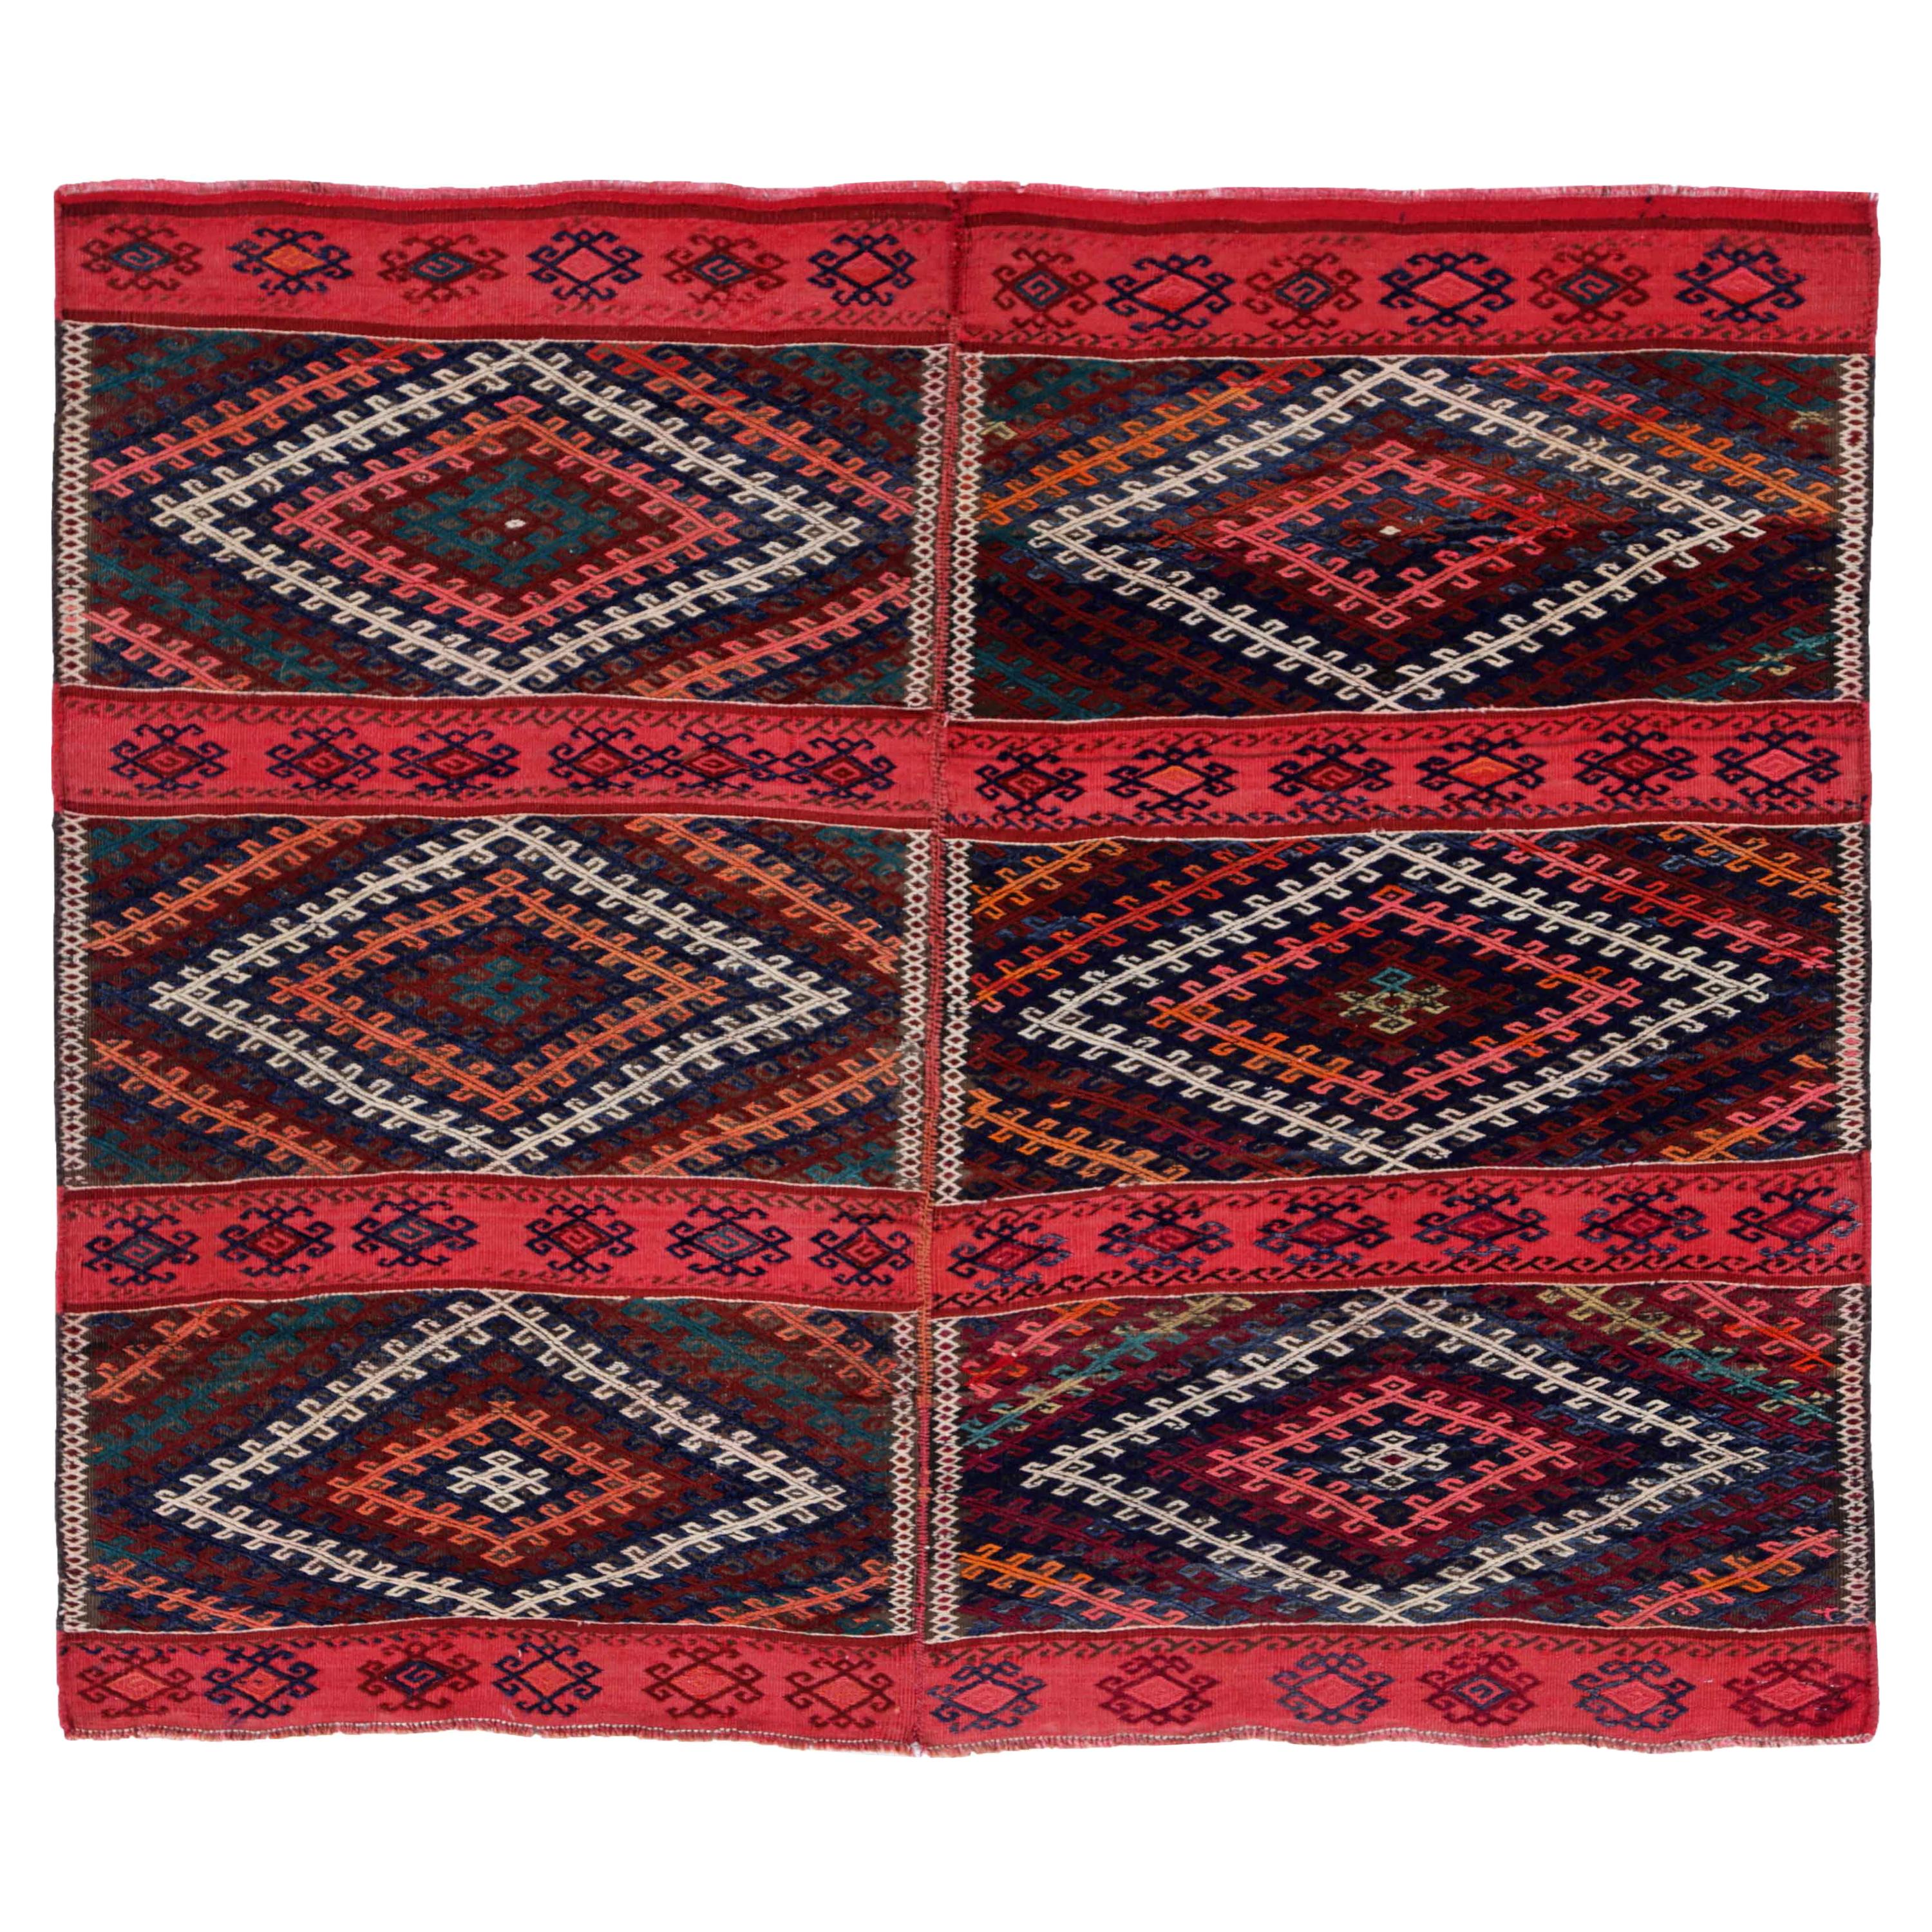 Antique Persian Square Rug Kilim Design